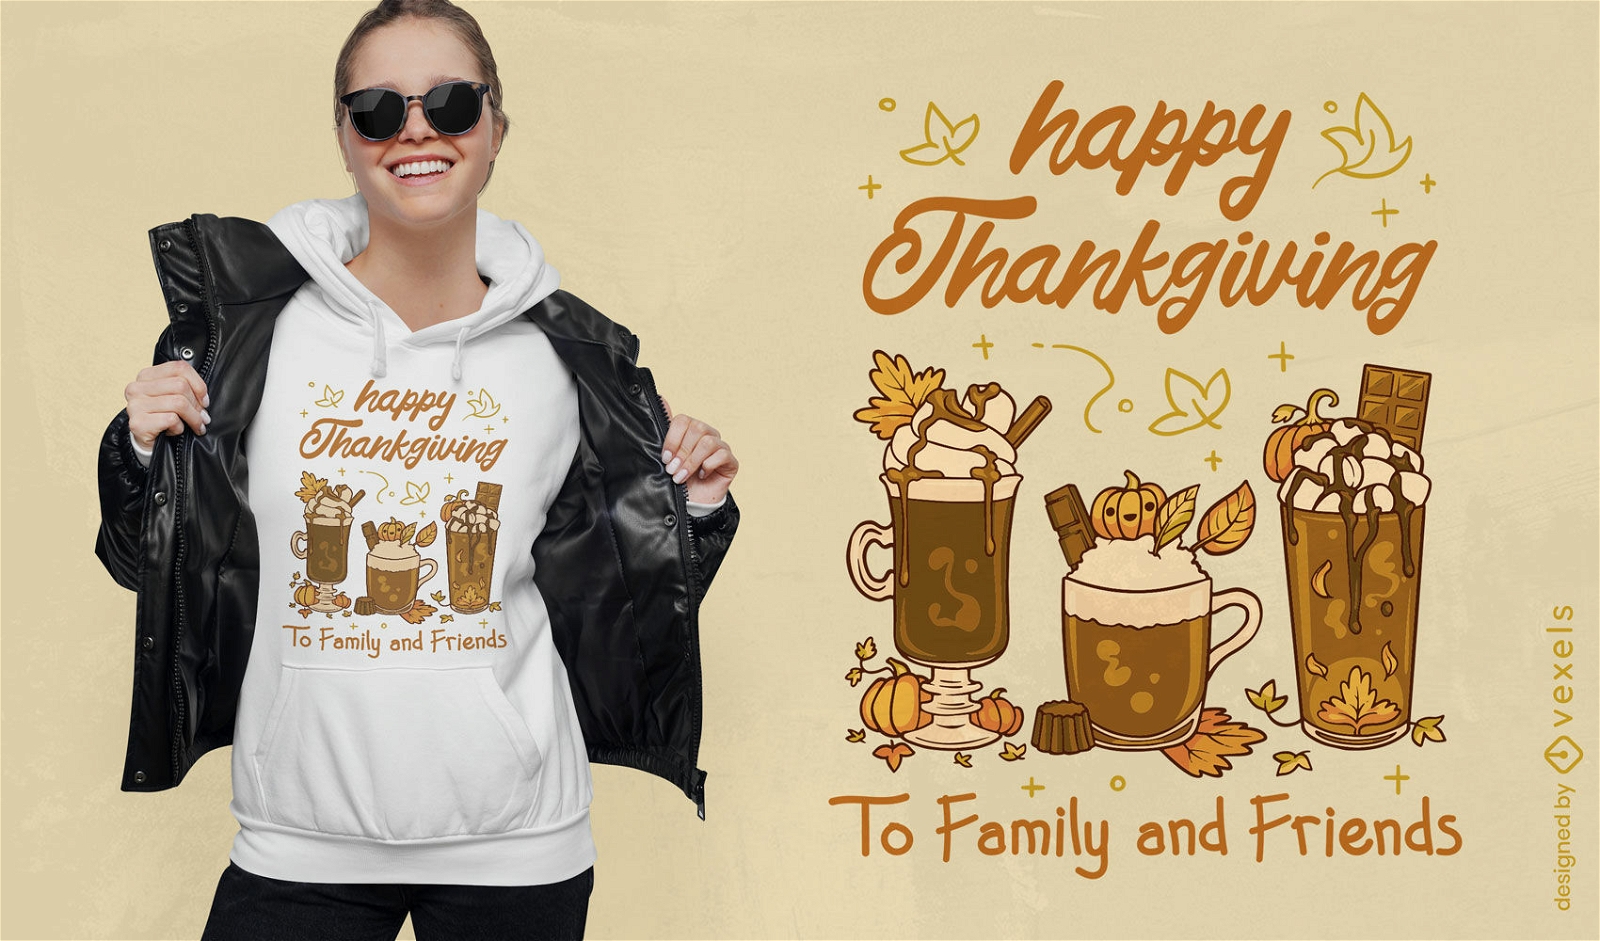 Thanksgiving-Kaffee trinkt T-Shirt-Design